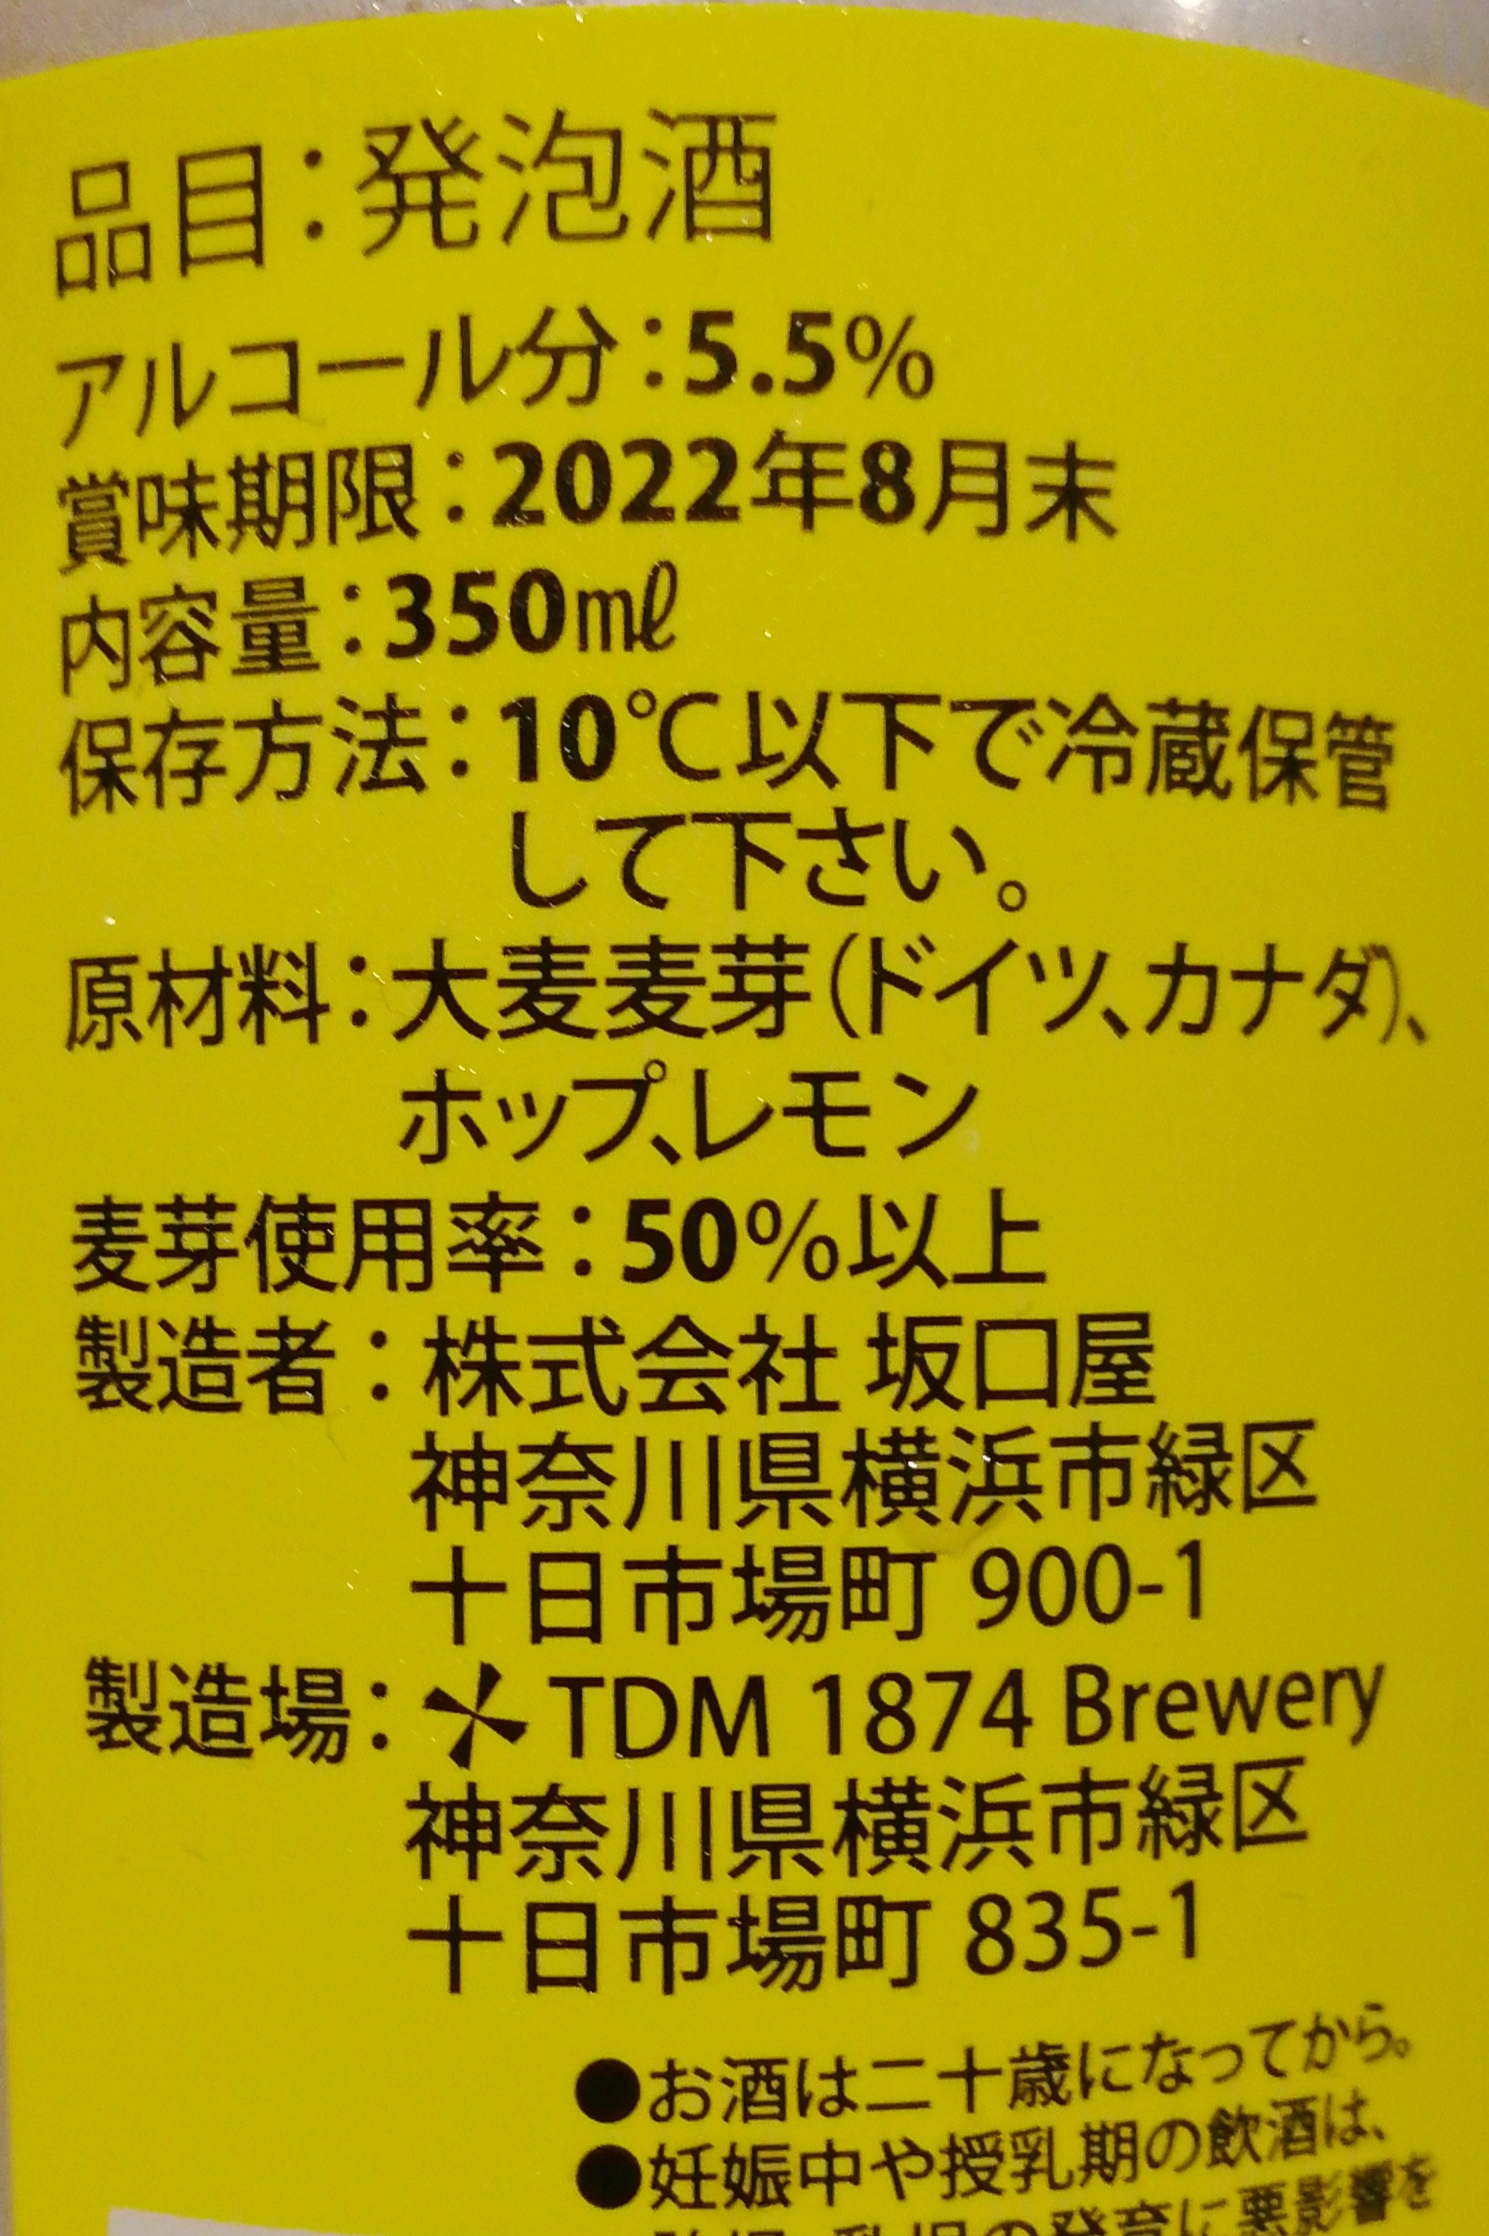 神奈川,TDM1874Brewery,農×Beer,のびーるれもん